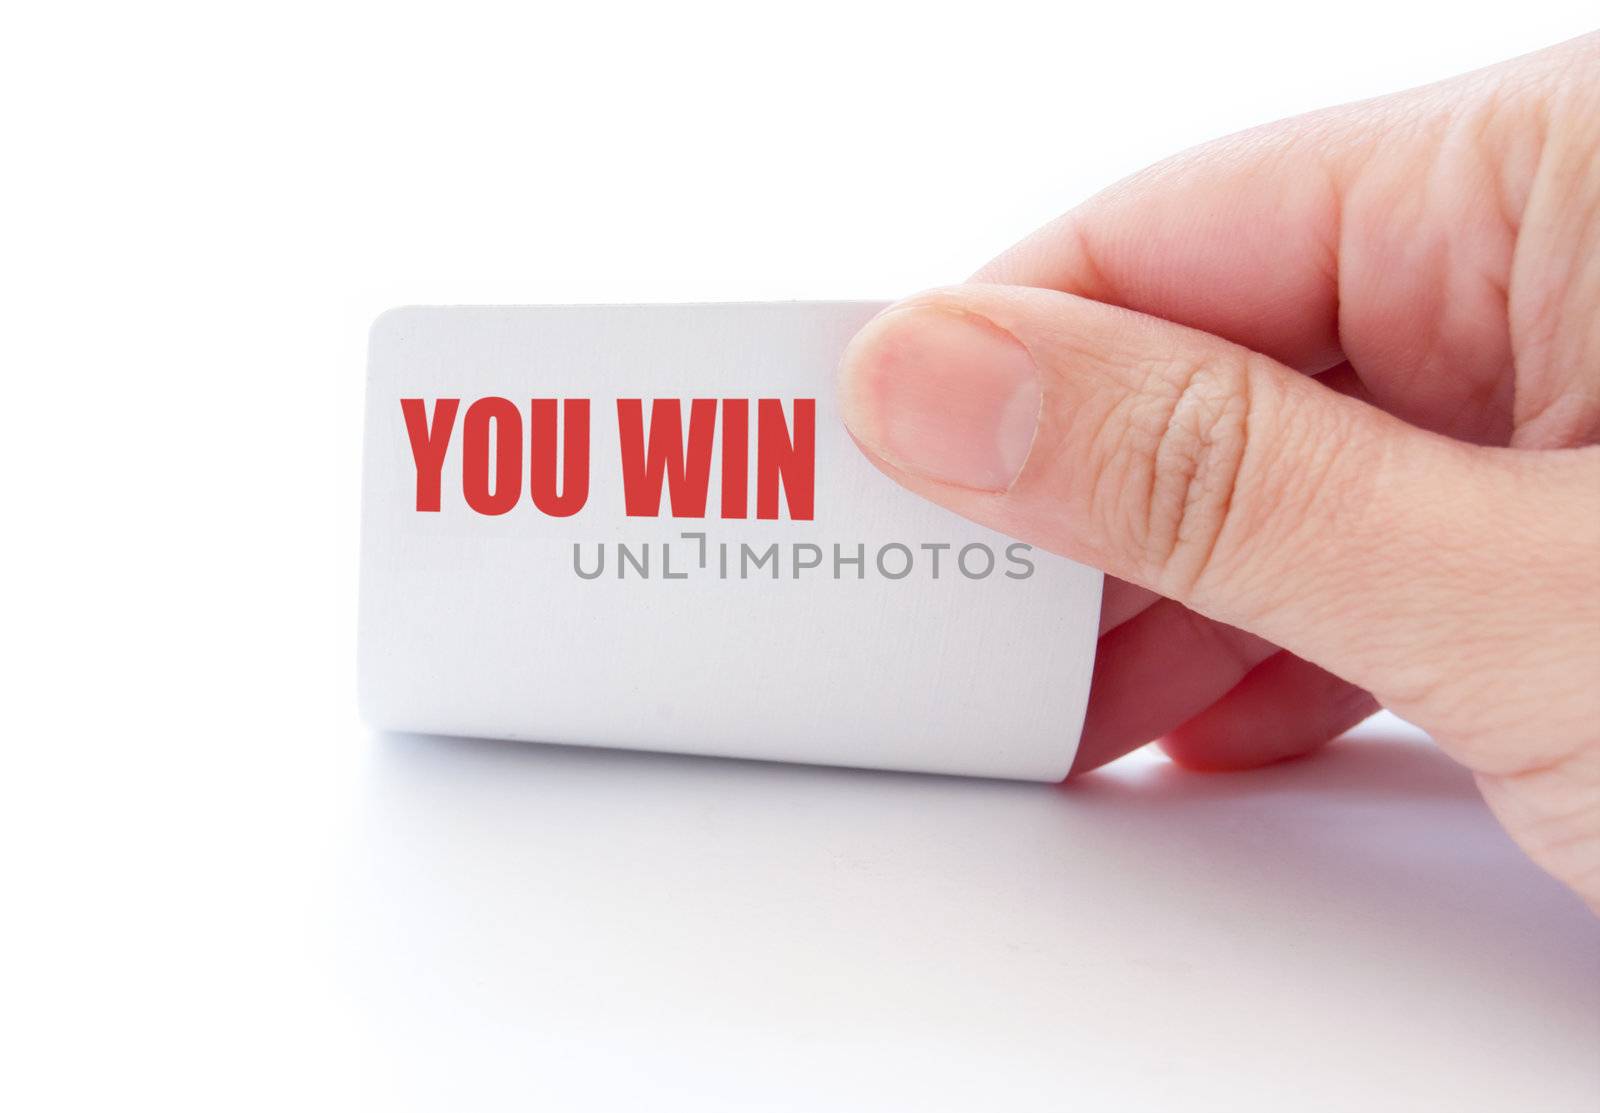 You win by unikpix